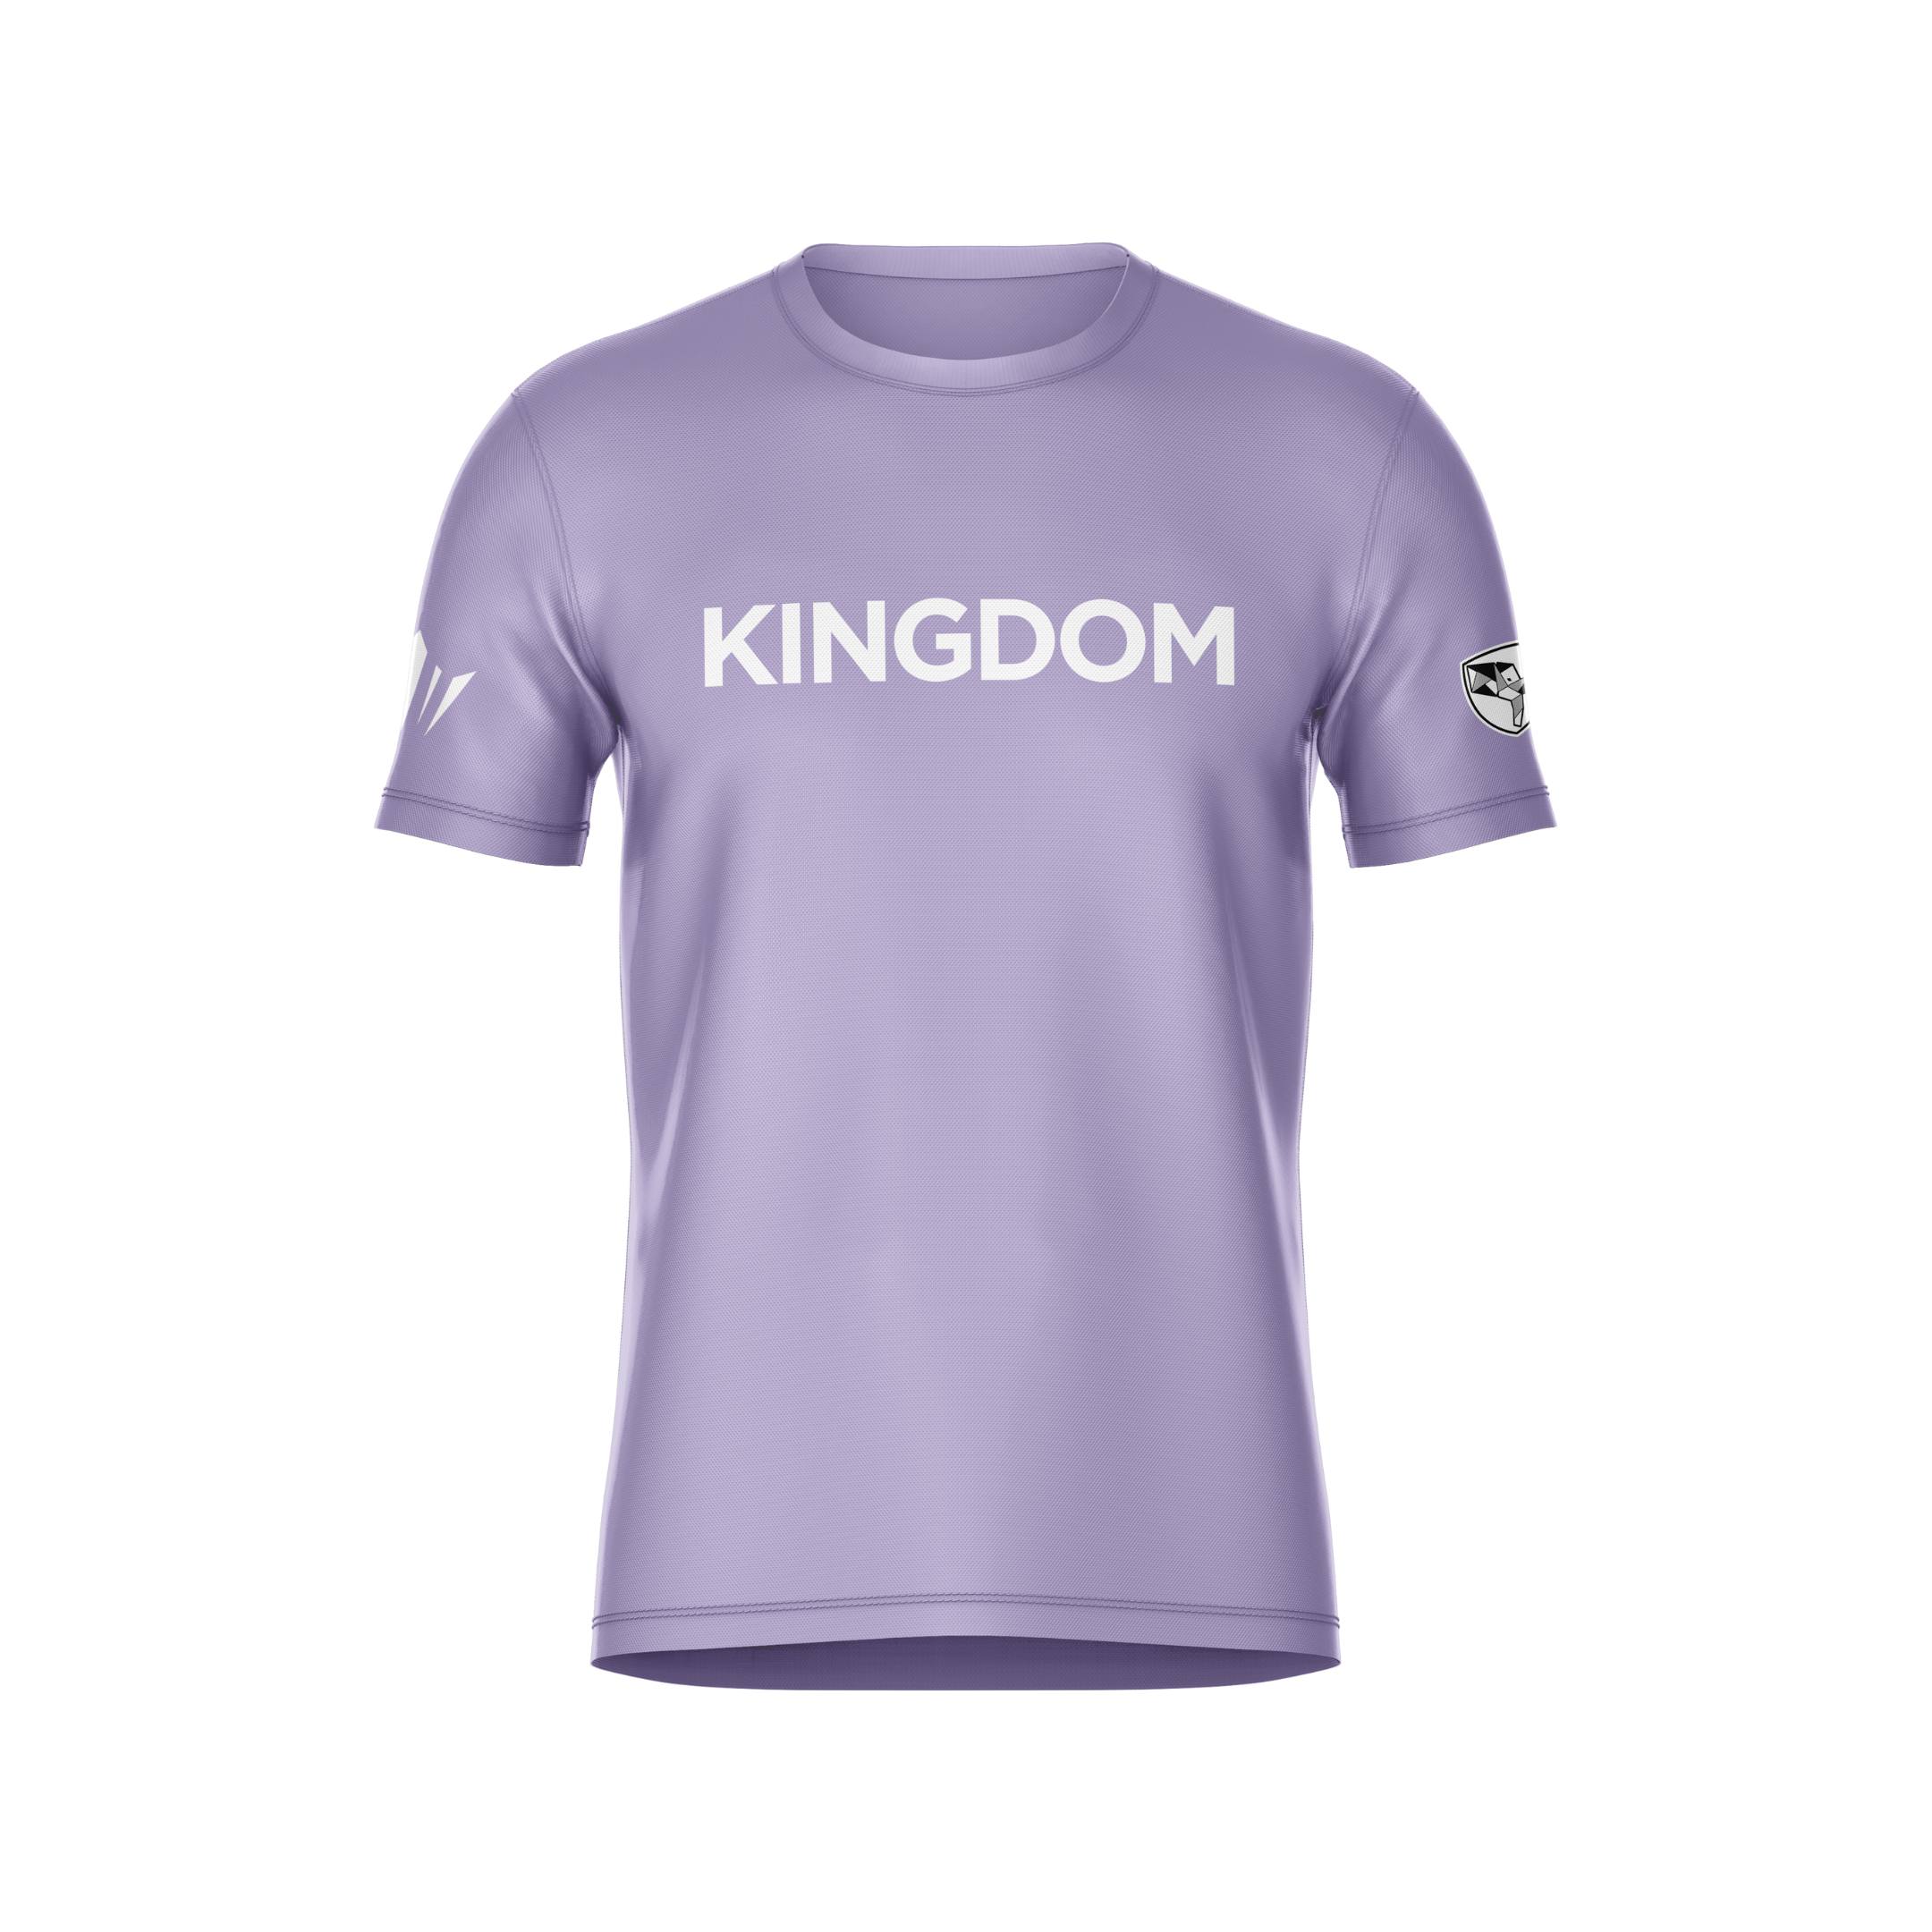 Kingdom Tee - Purple